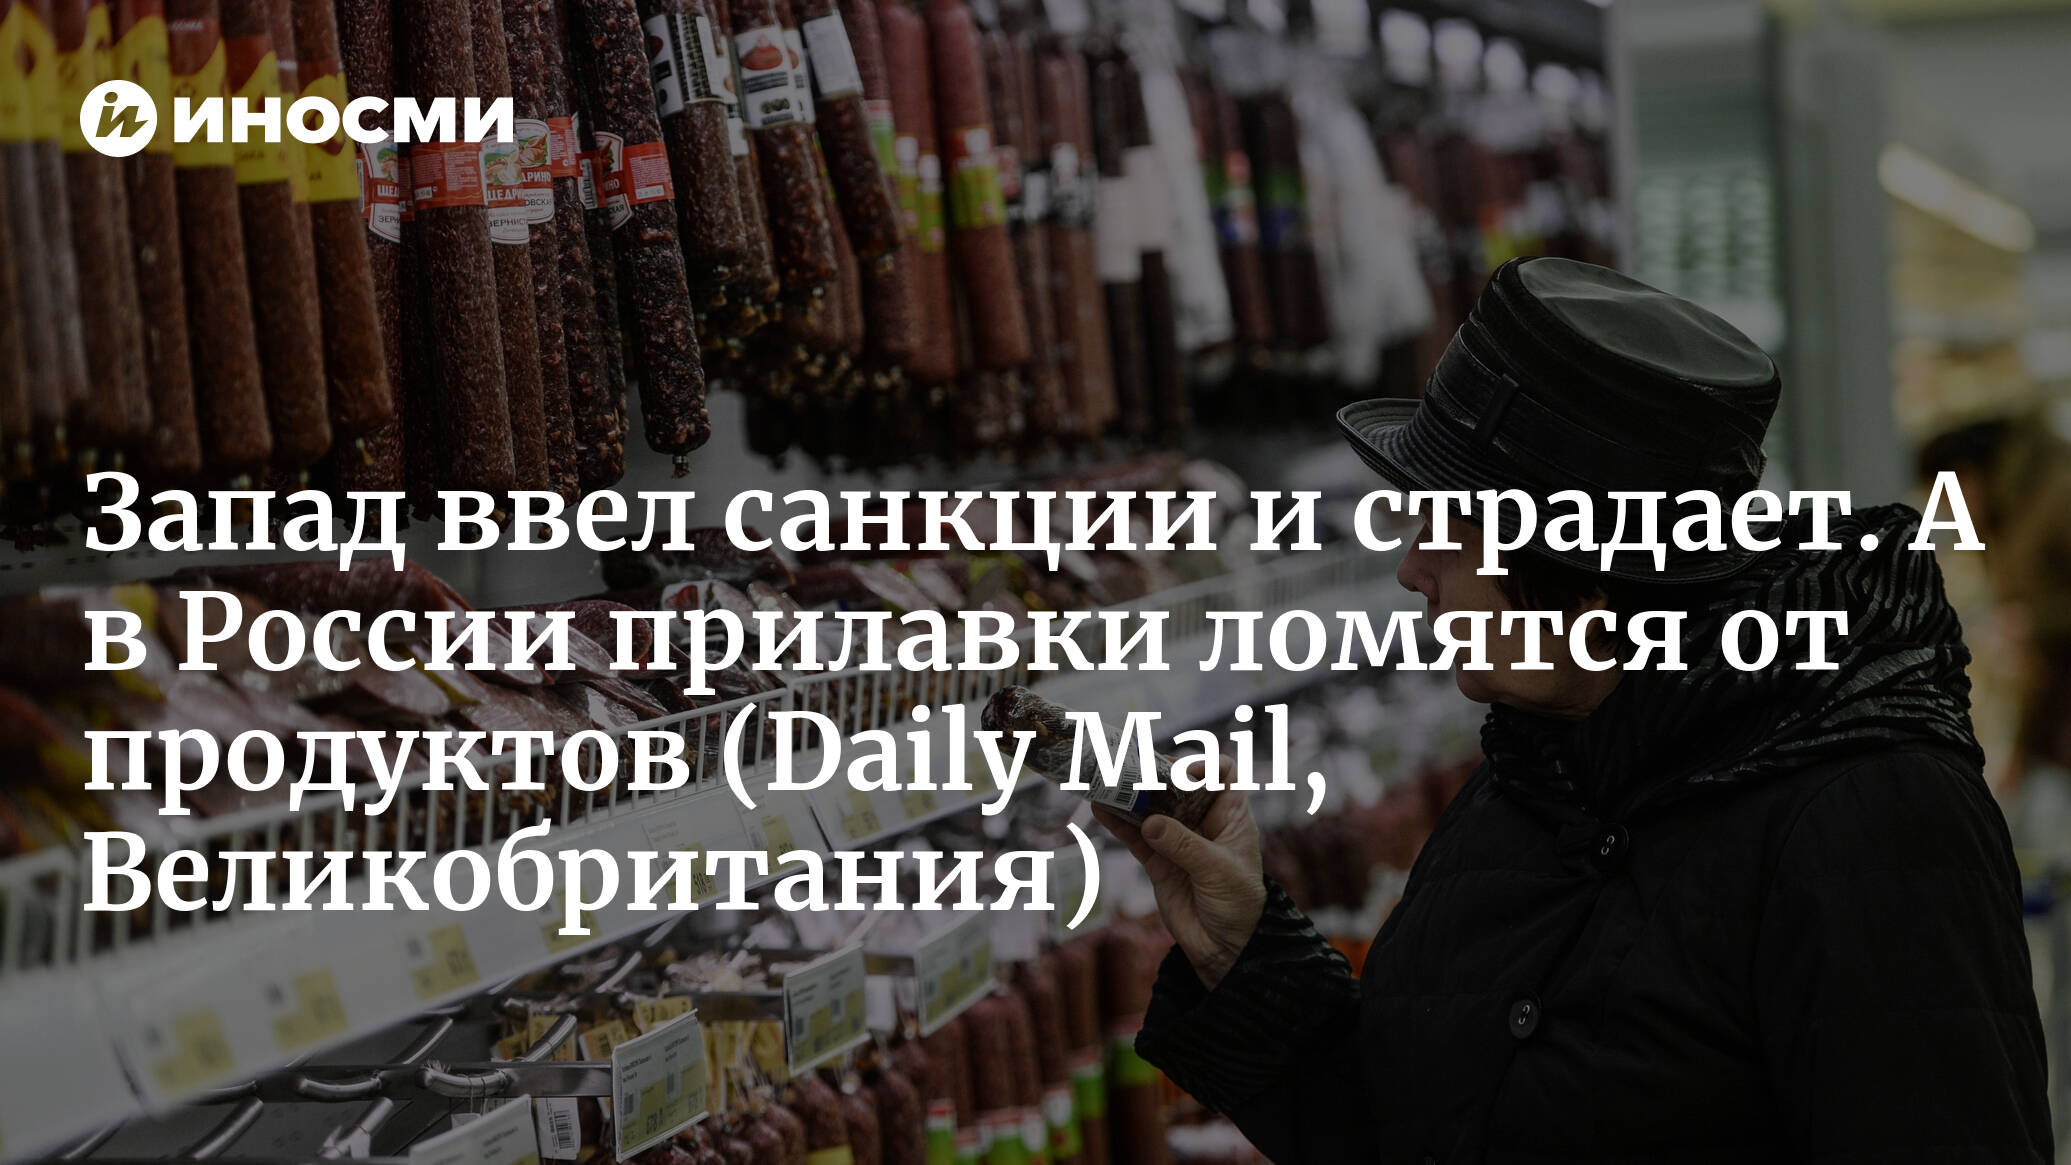 Запад ввел санкции и страдает. А в России прилавки ломятся от продуктов (Daily Mail, Великобритания)